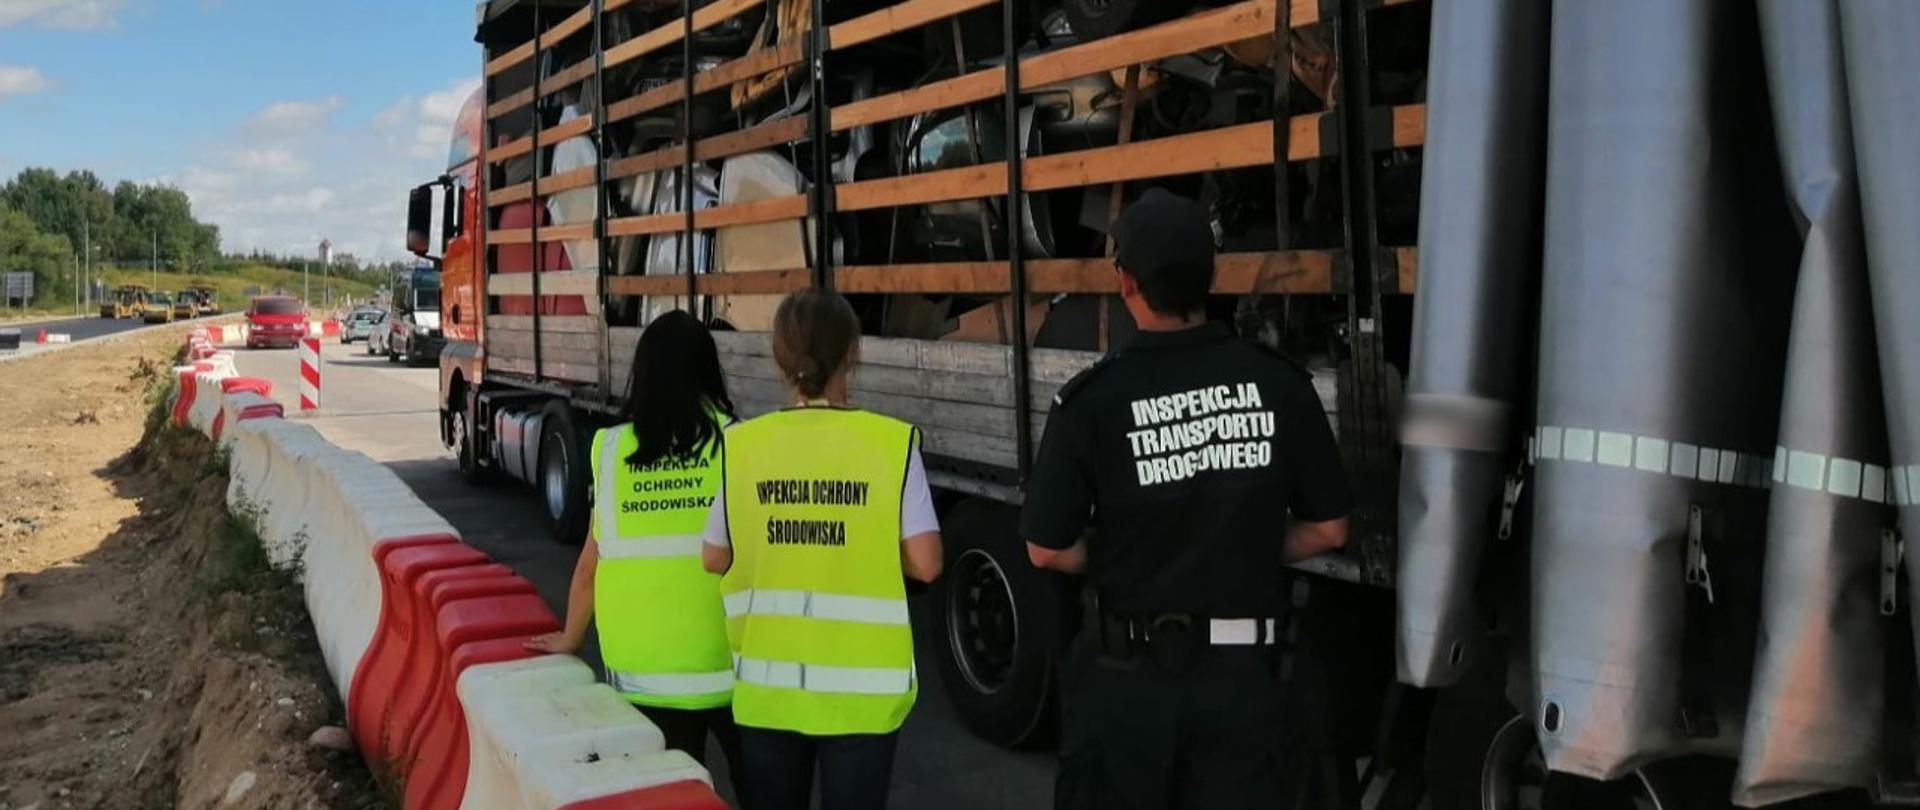 Na pierwszym planie: Inspektor ITD i pracownicy WIOŚ stoją obok naczepy z odsuniętą plandeką i kontrolują zawartość przestrzeni ładunkowej. W tle: oznakowany radiowóz ITD typu furgon i przebudowywana droga.